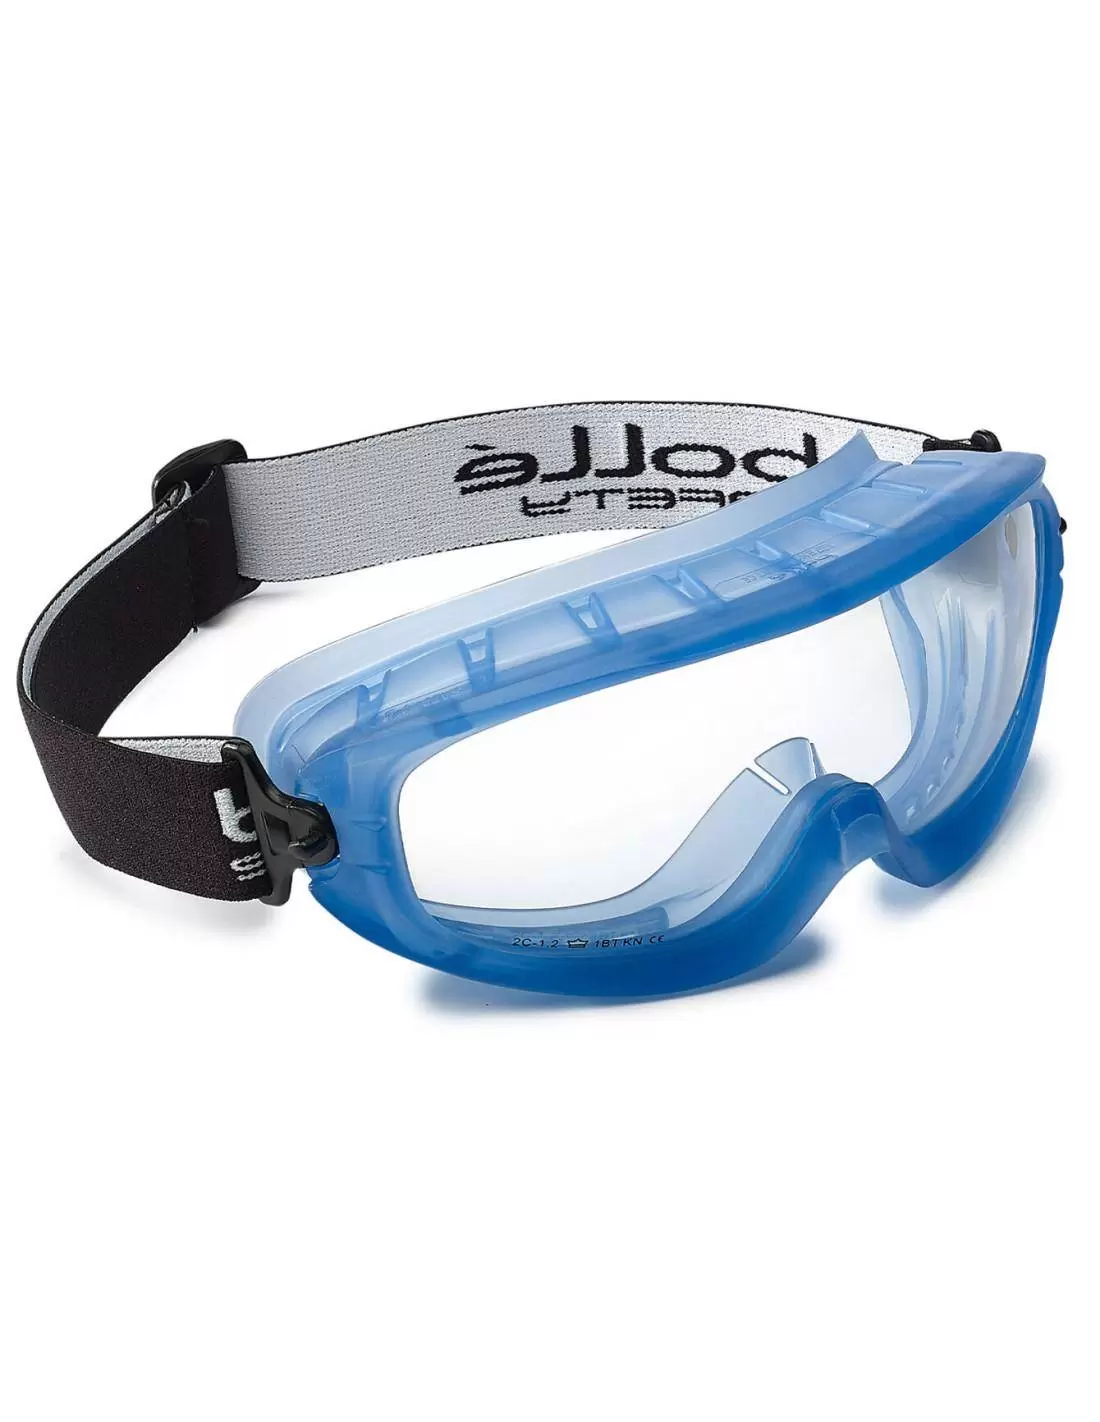 Ecran pare-visage pour lunettes-masque Bollé Safety